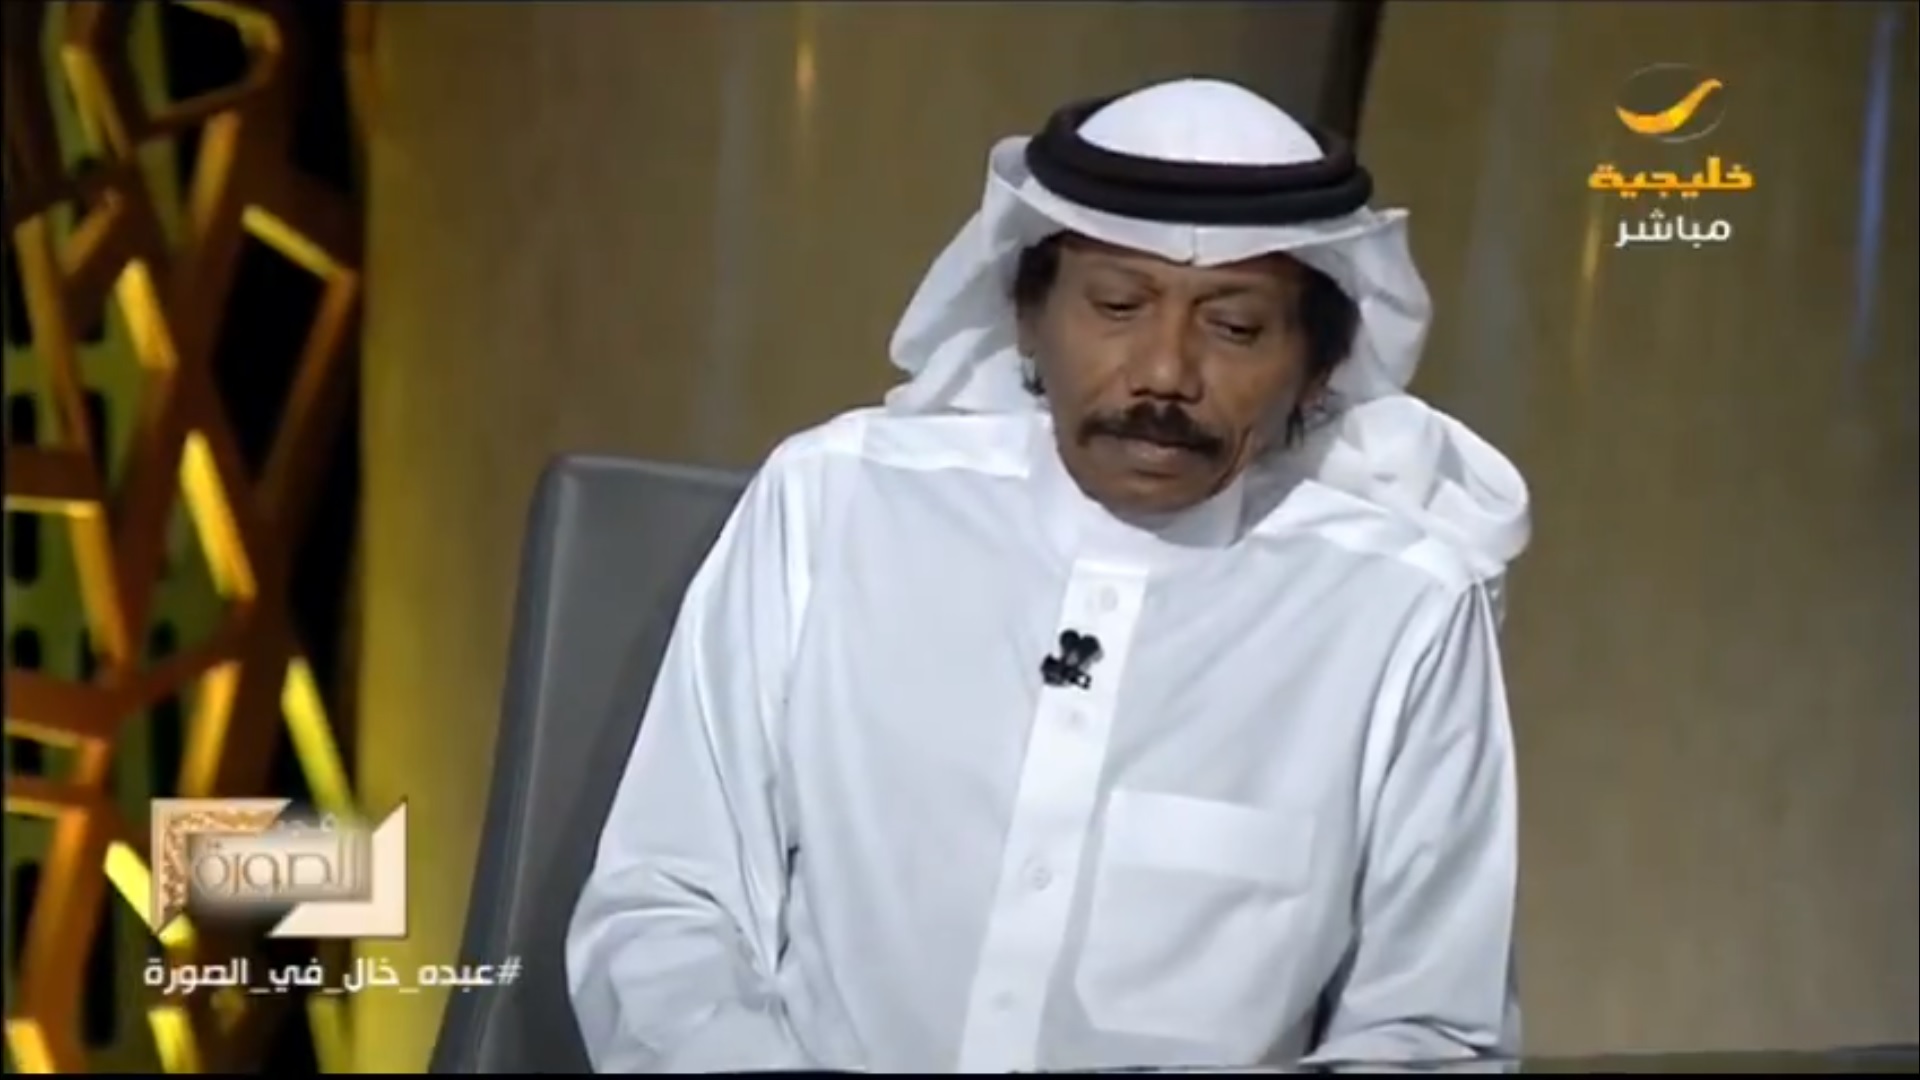 عبده خال يقترح على الأمير محمد بن سلمان تدشين جائزة عربية للرواية